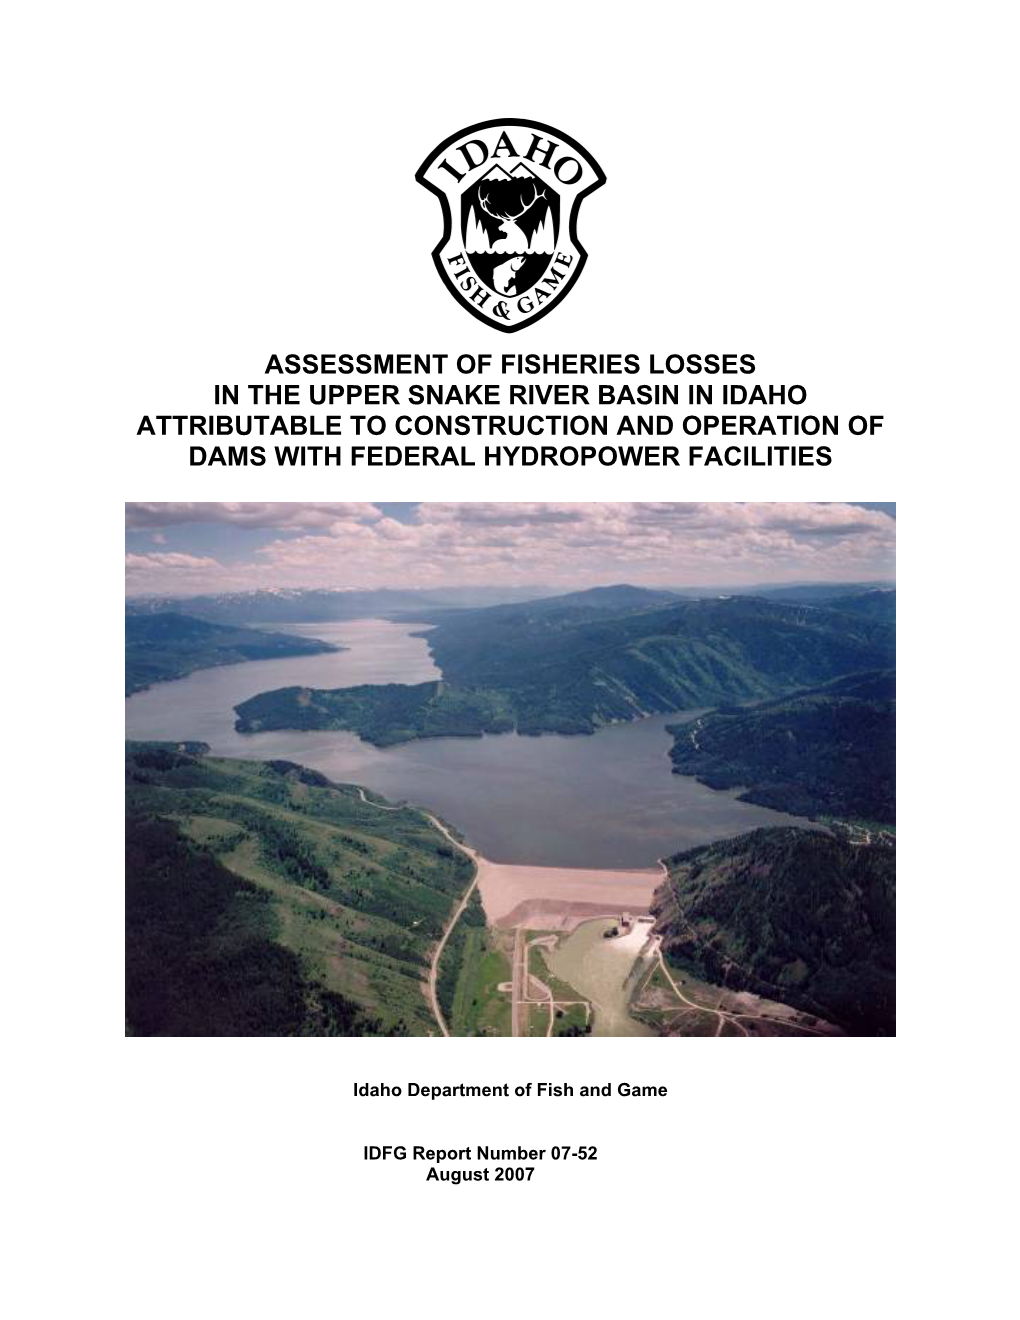 IDFG Assessment of Fisheries Losses in the Upper Snake River Basin